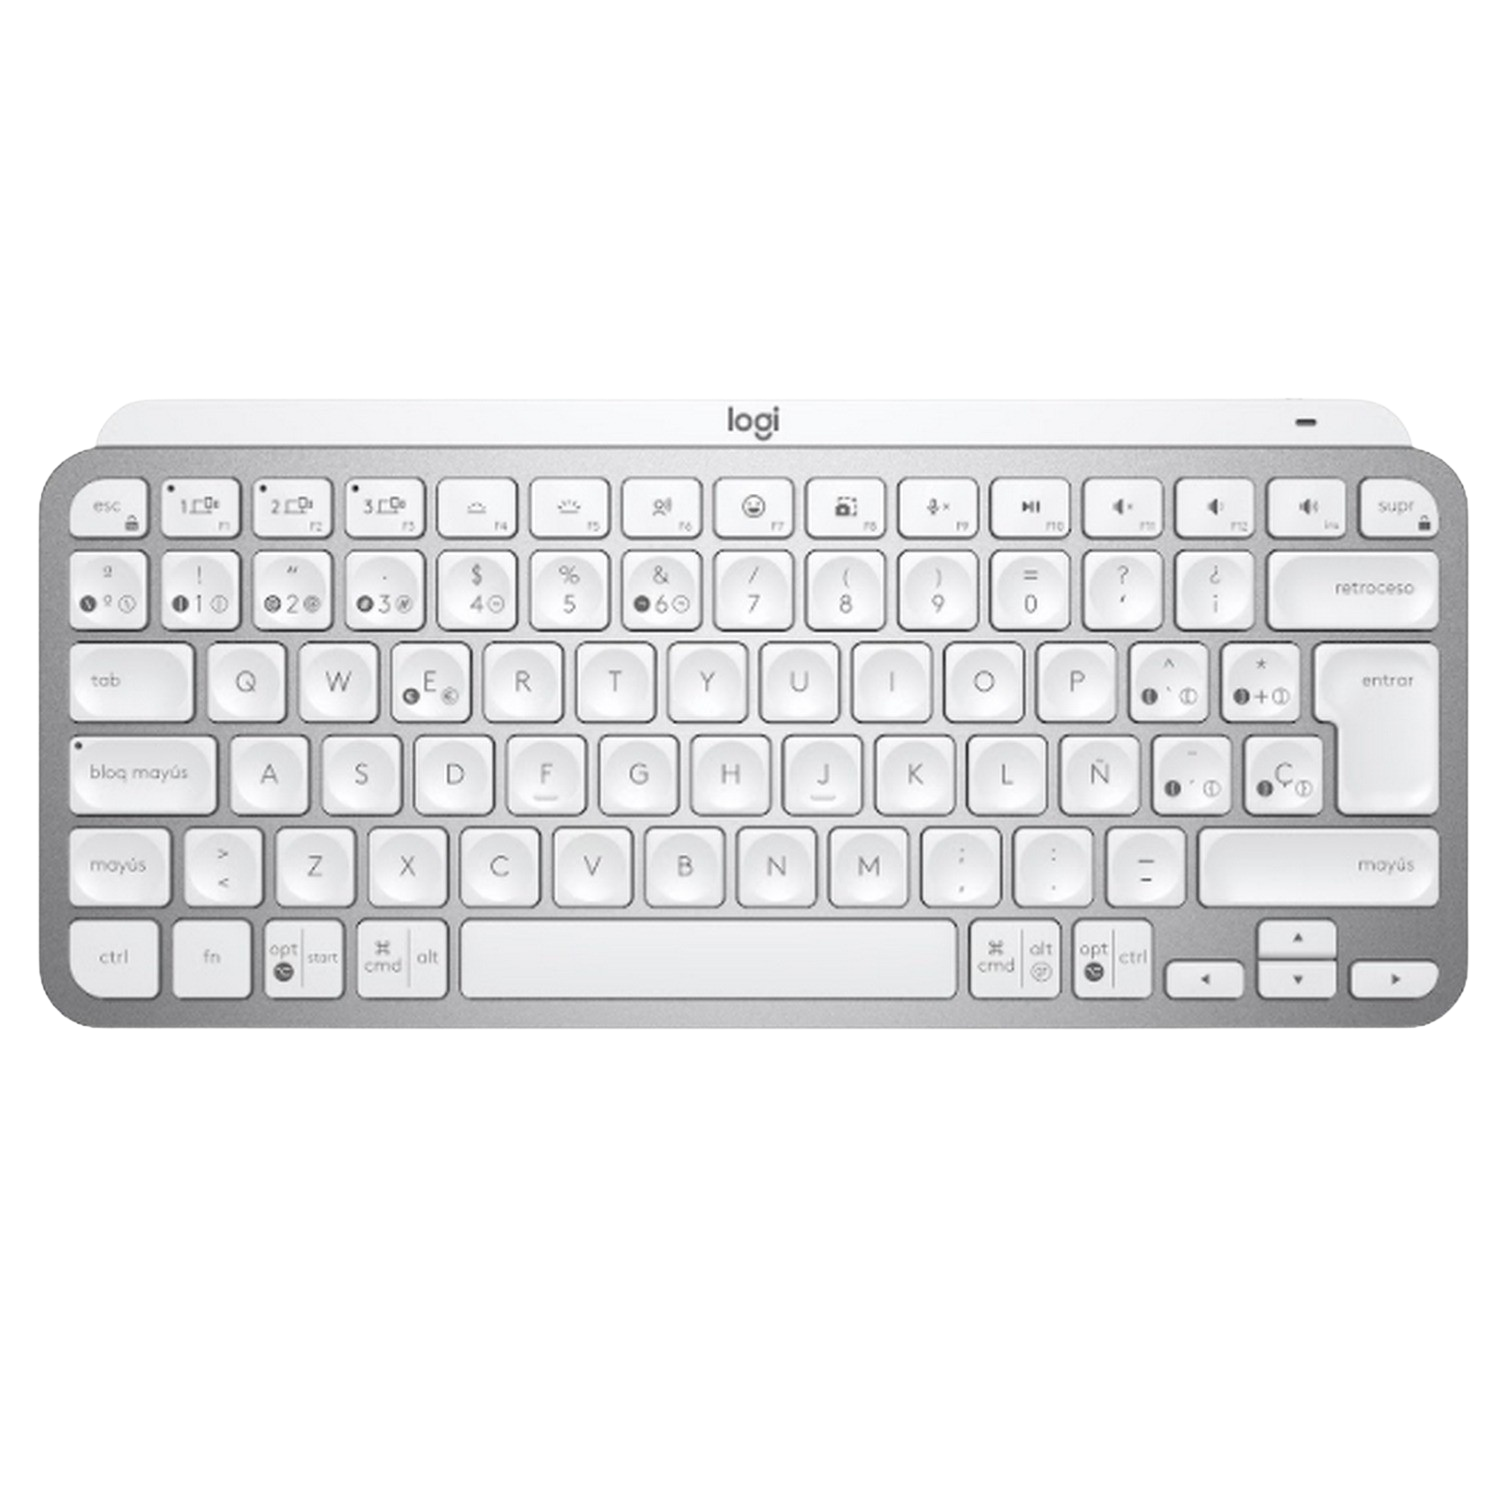 Logitech Mx Keys teclado minimalista compacto bluetooth retroiluminado usbc compatible con apple macos ios windows linux android de metal gris claro para 10